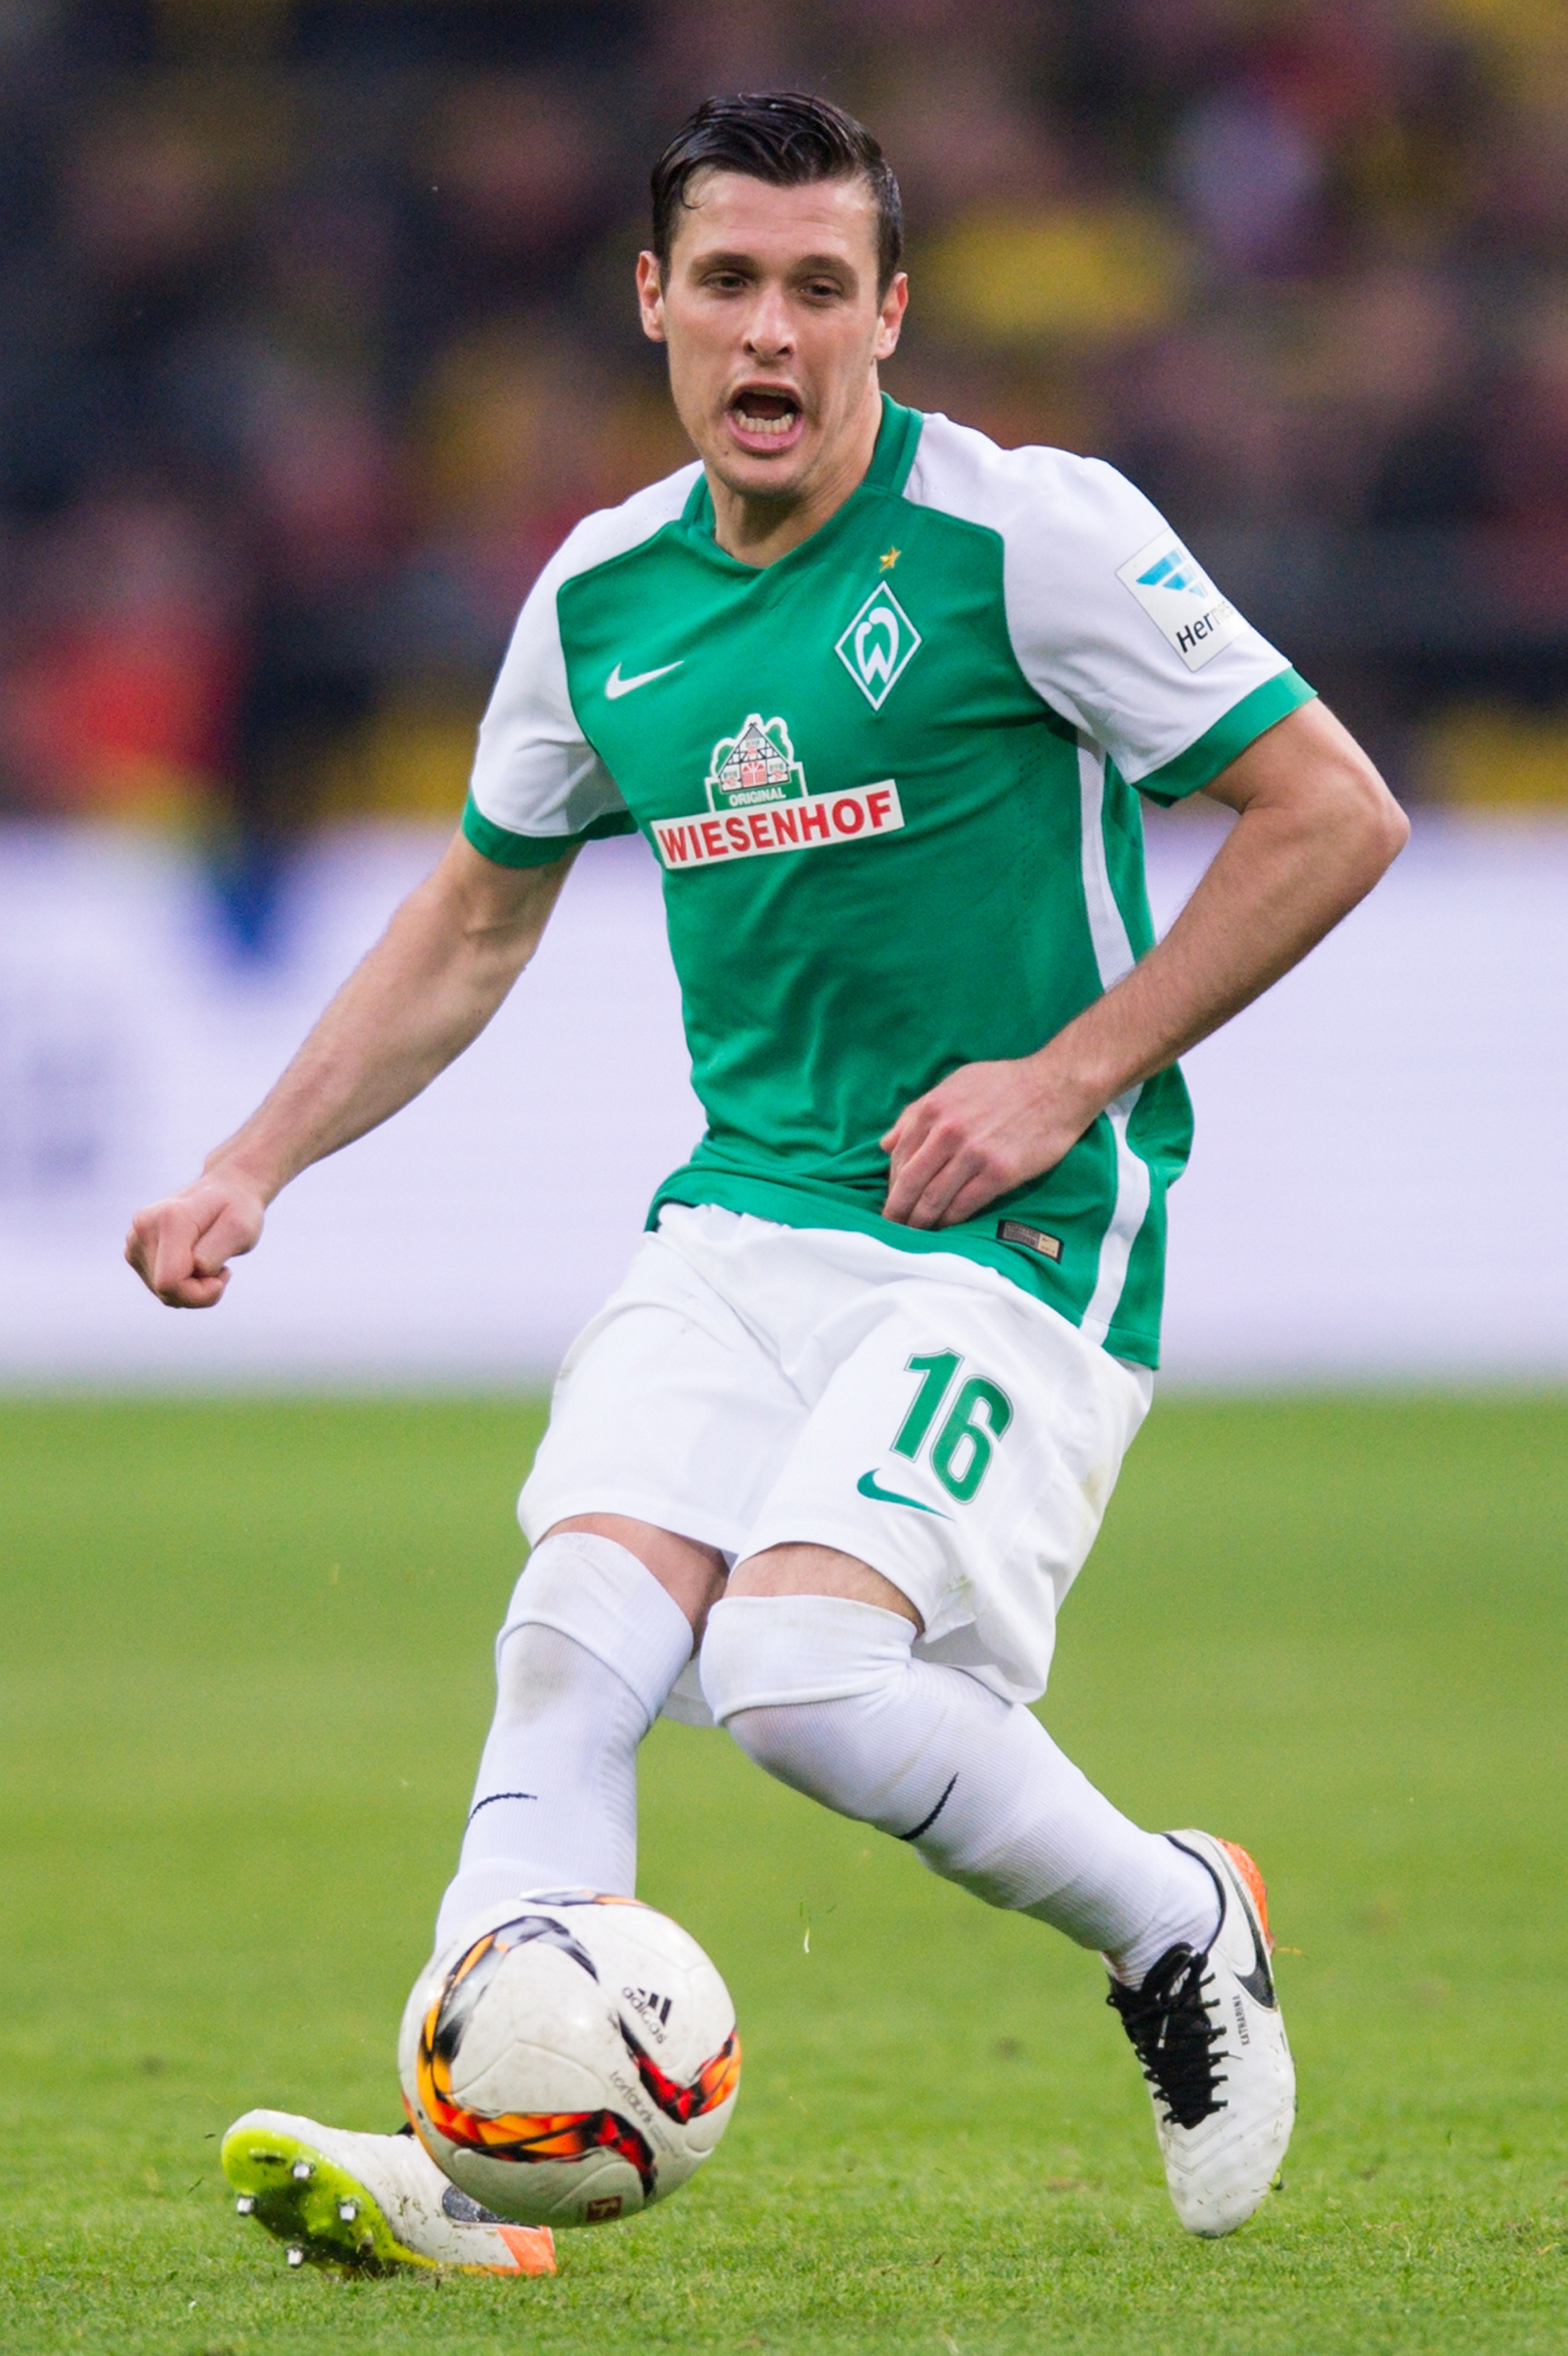 Werder Bremen Junuzovic